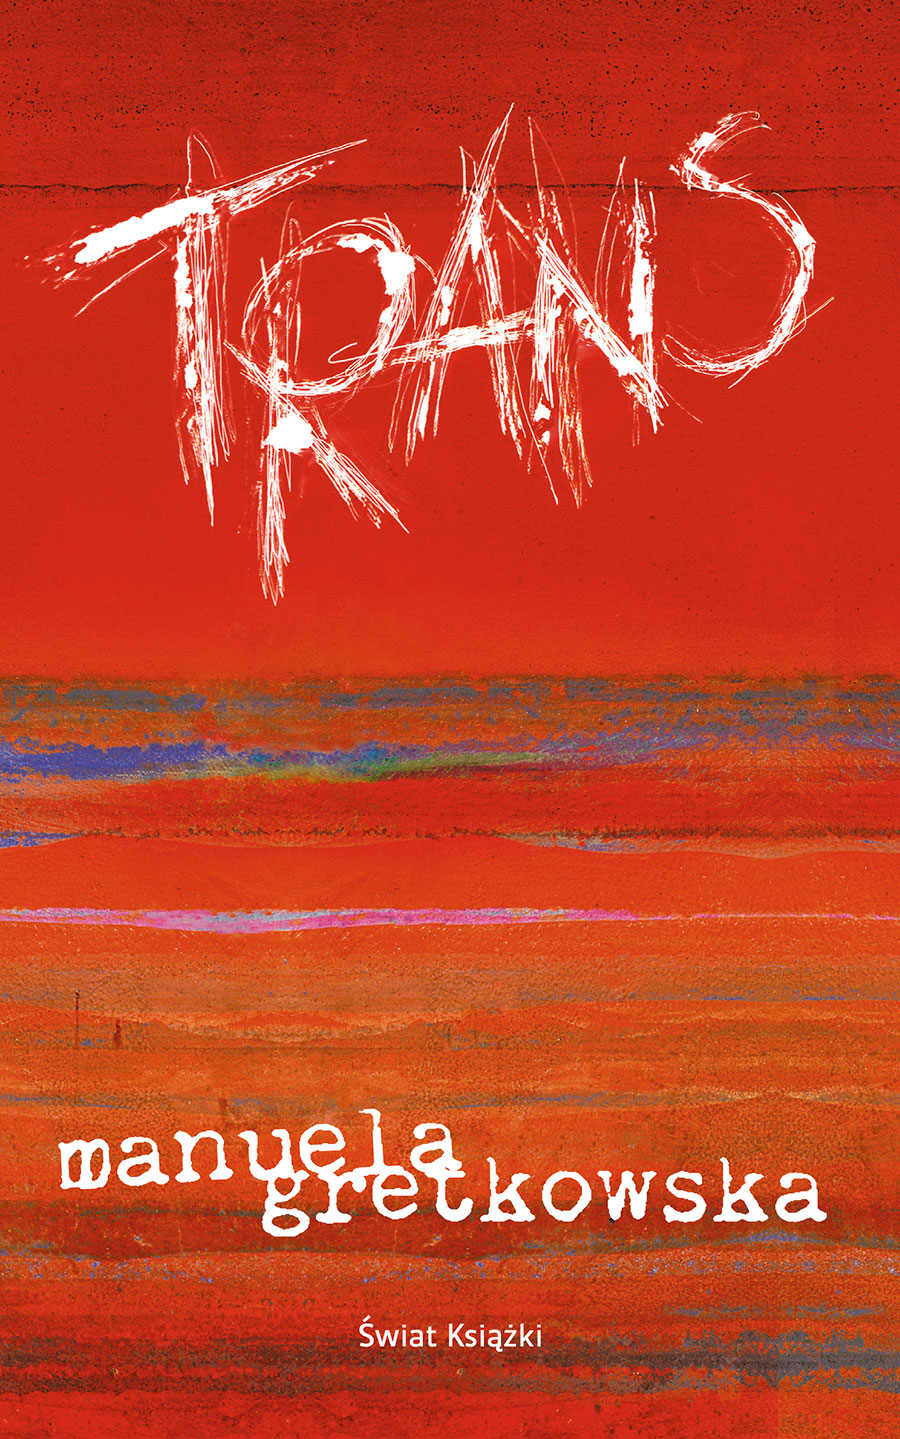 okładka książki "Trans" Manueli Gretkowskiej